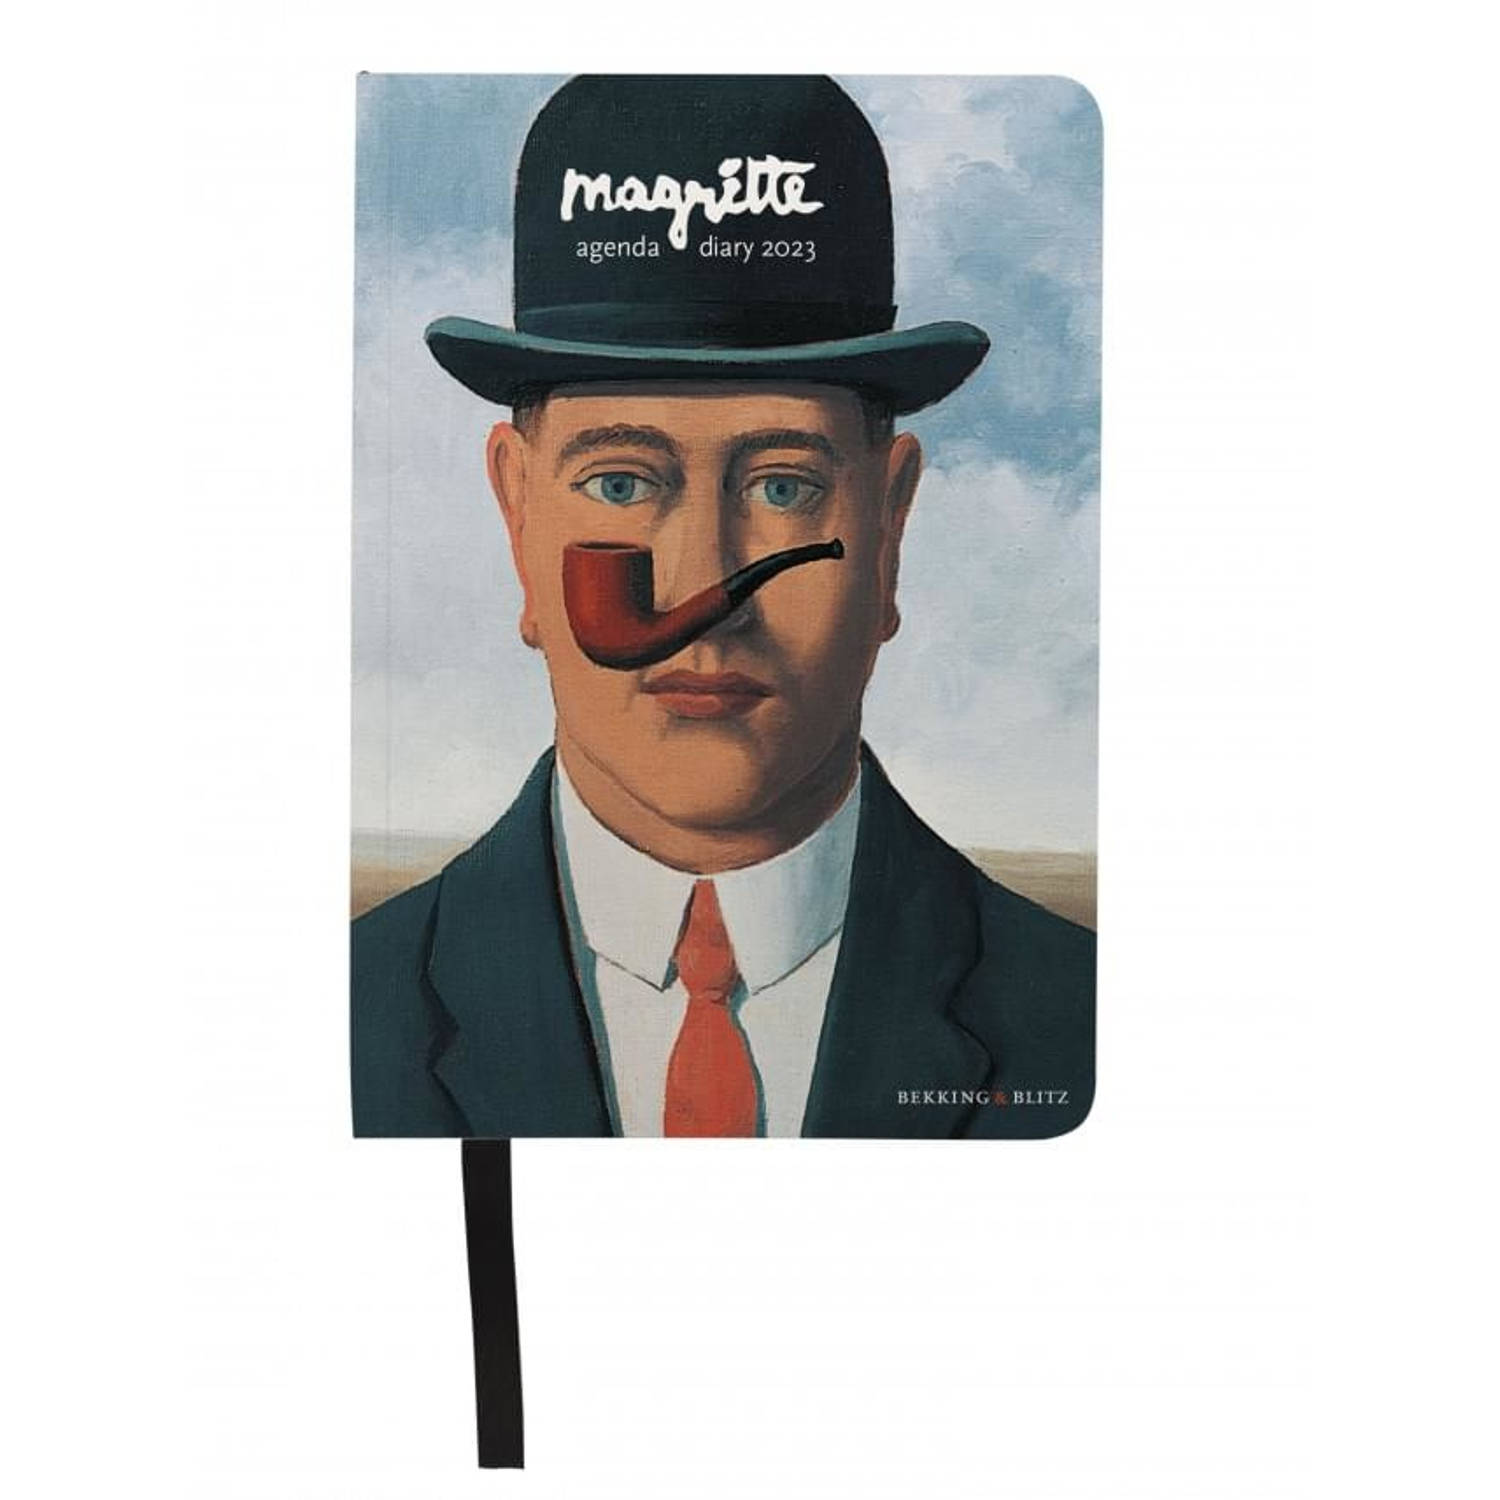 Bekking & Blitz - Miniagenda 2023 - Magritte mini agenda 2023 - Zakagenda - 11 x 15 cm - Kunstagenda - Museumagenda - Met handig leeslint - Weekoverzicht op 1 pagina  - Rijk geïllu